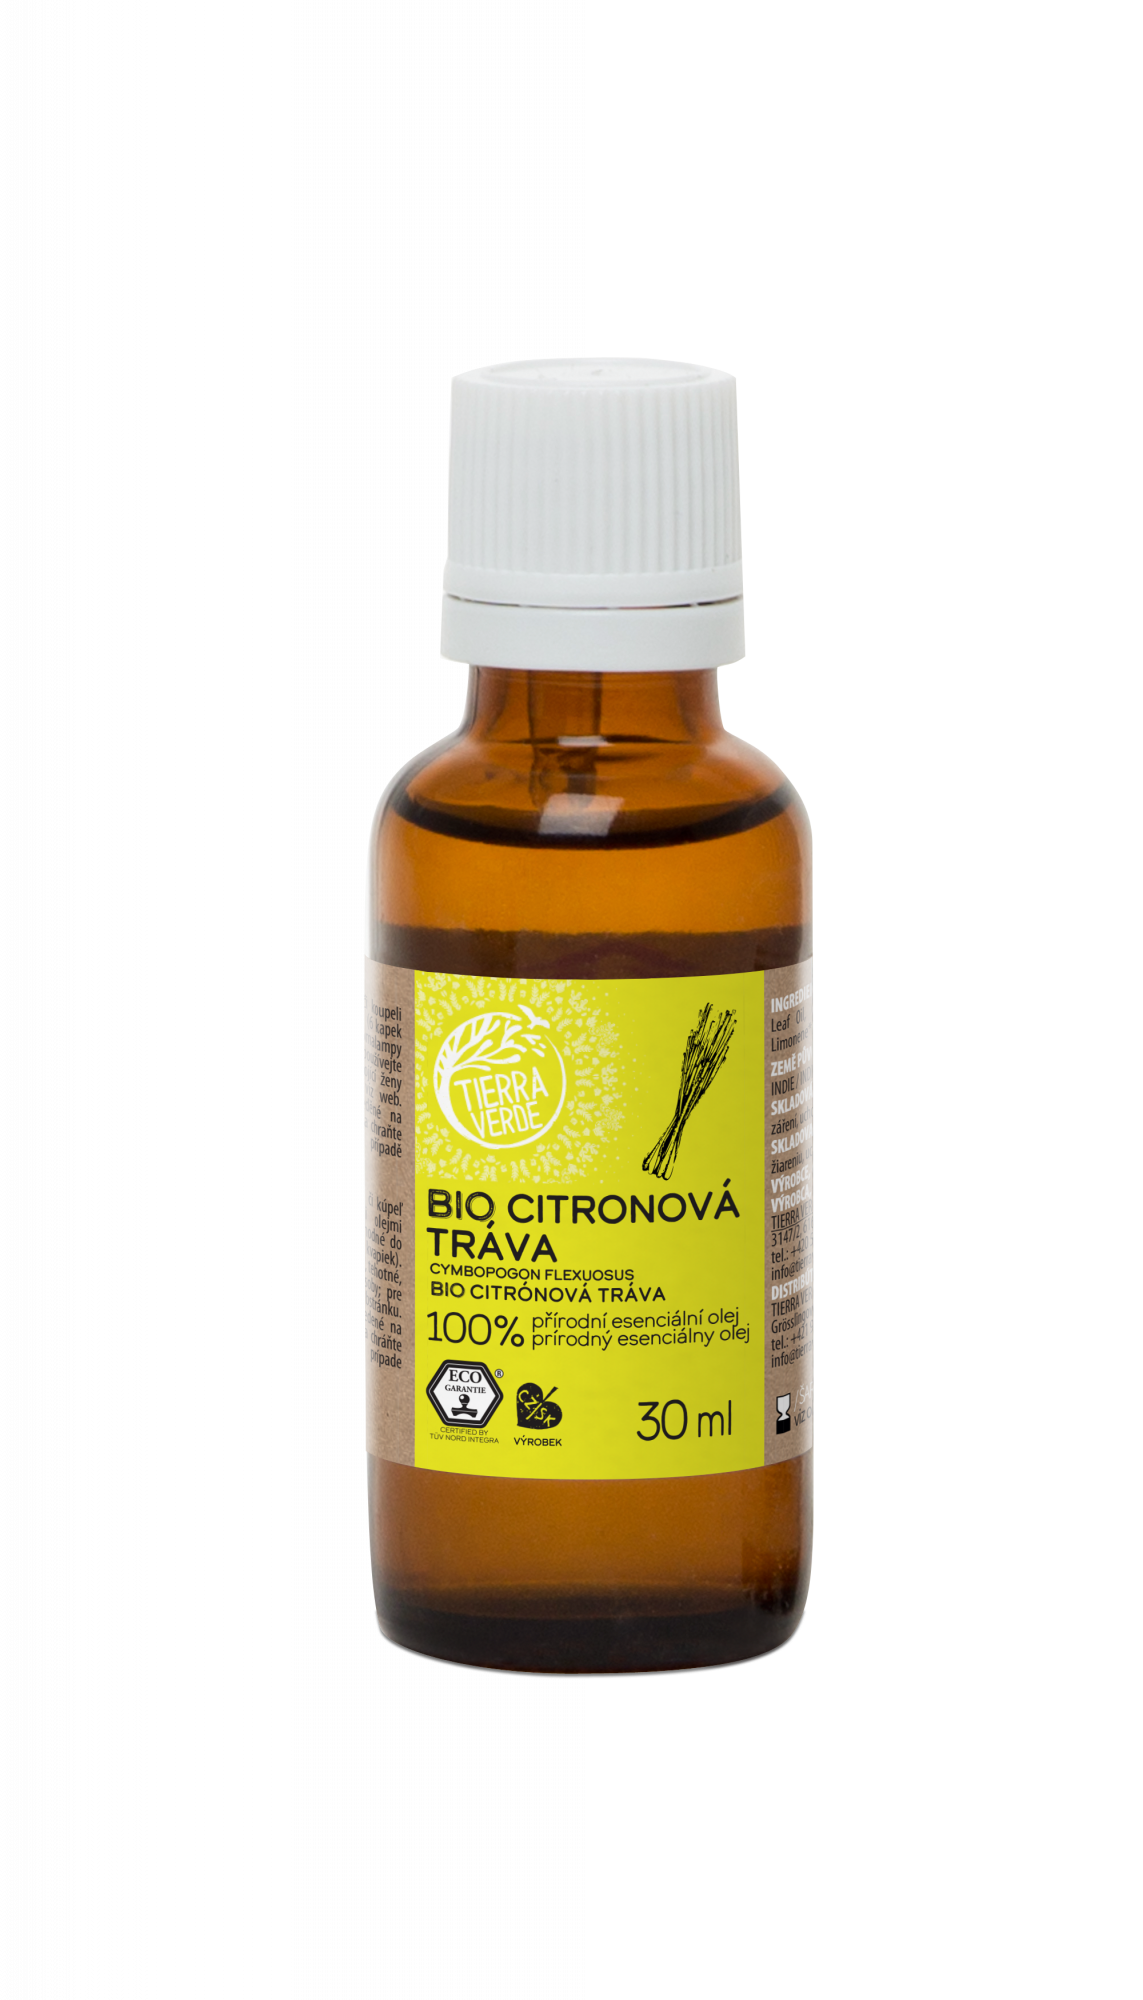 Tierra Verde Esenciální olej Citronová tráva BIO 30 ml - pomůže při vyčerpání